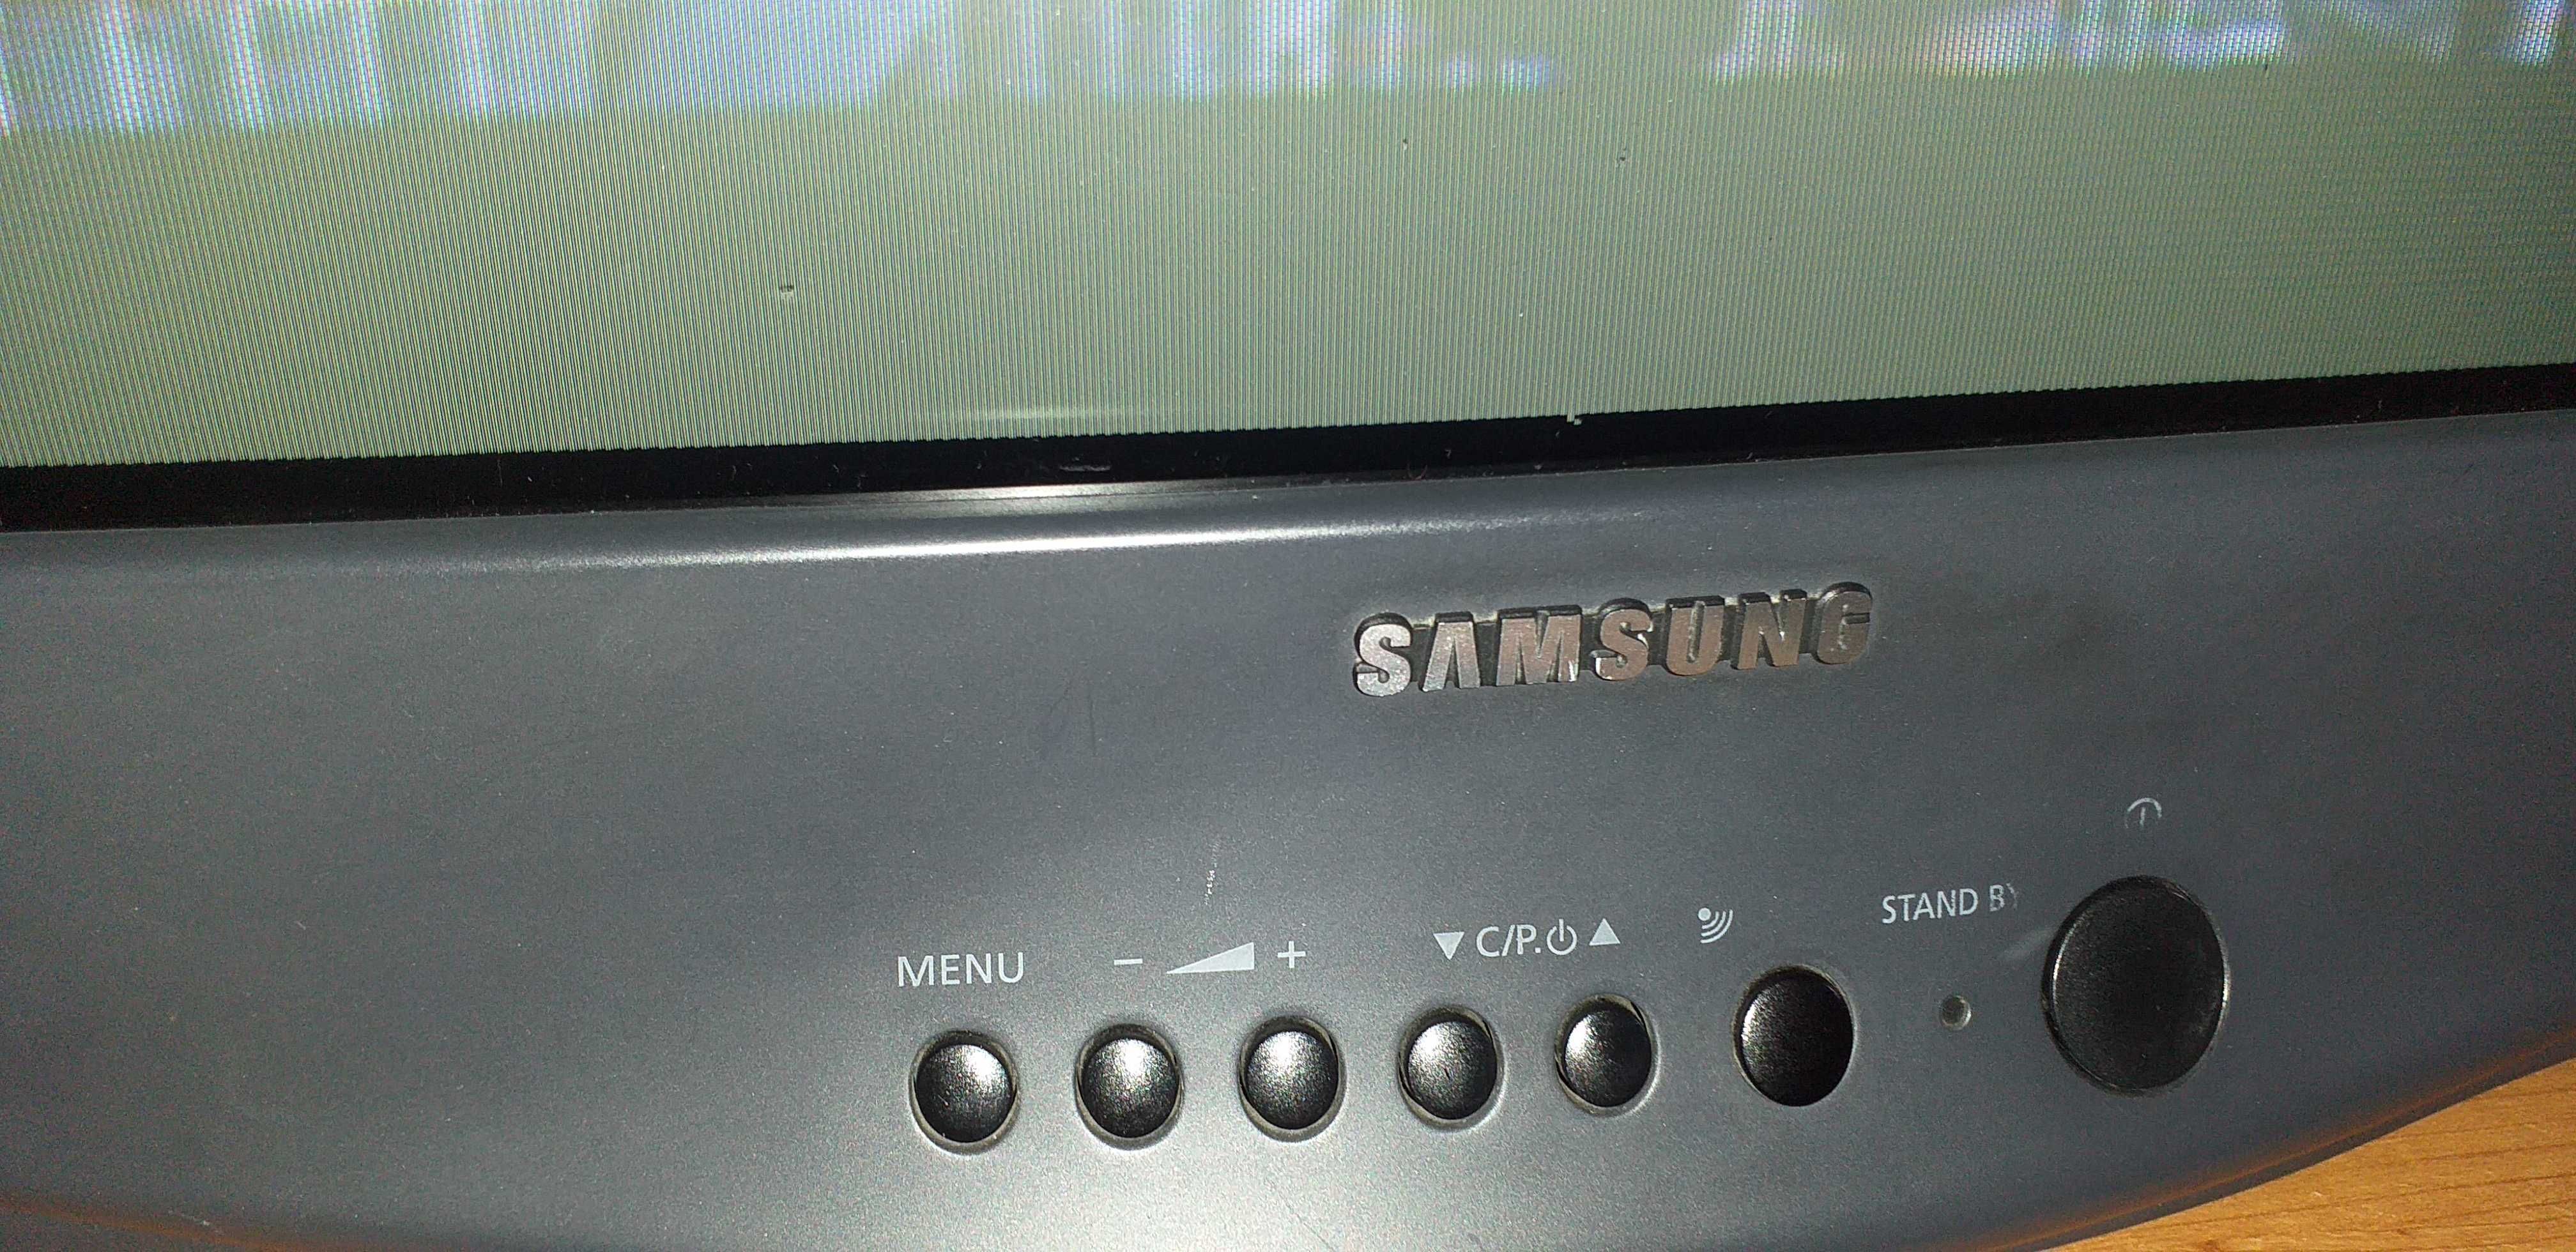 TV   Samsung. Crt